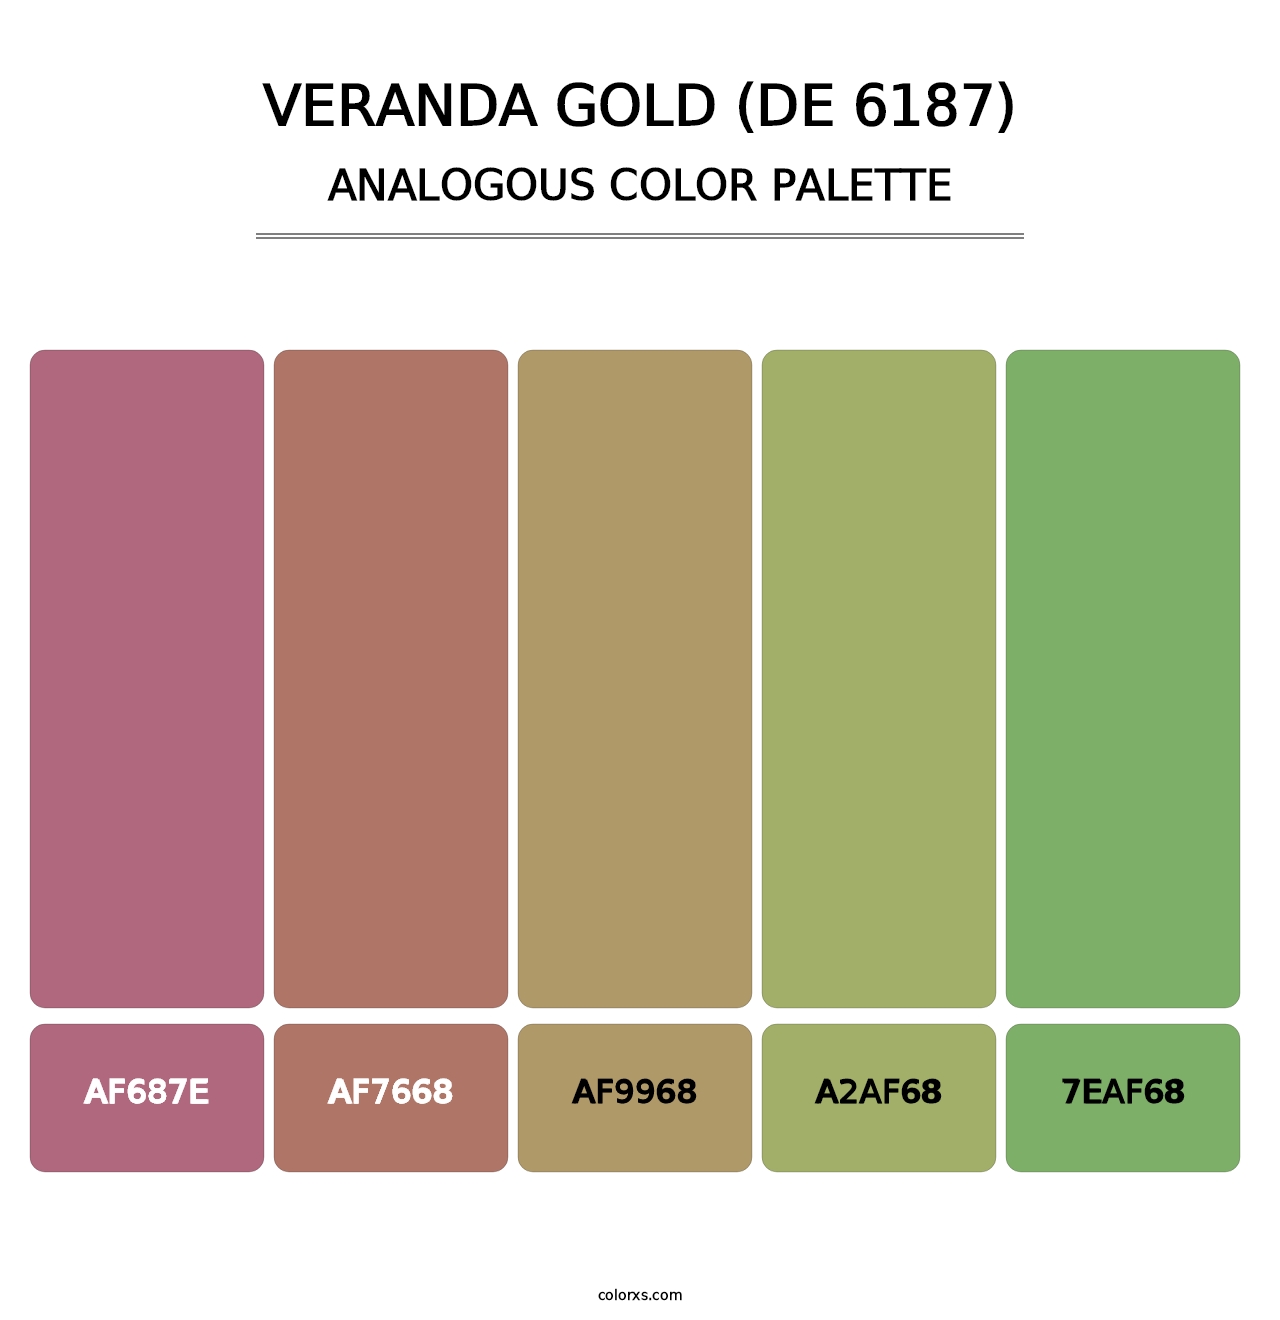 Veranda Gold (DE 6187) - Analogous Color Palette